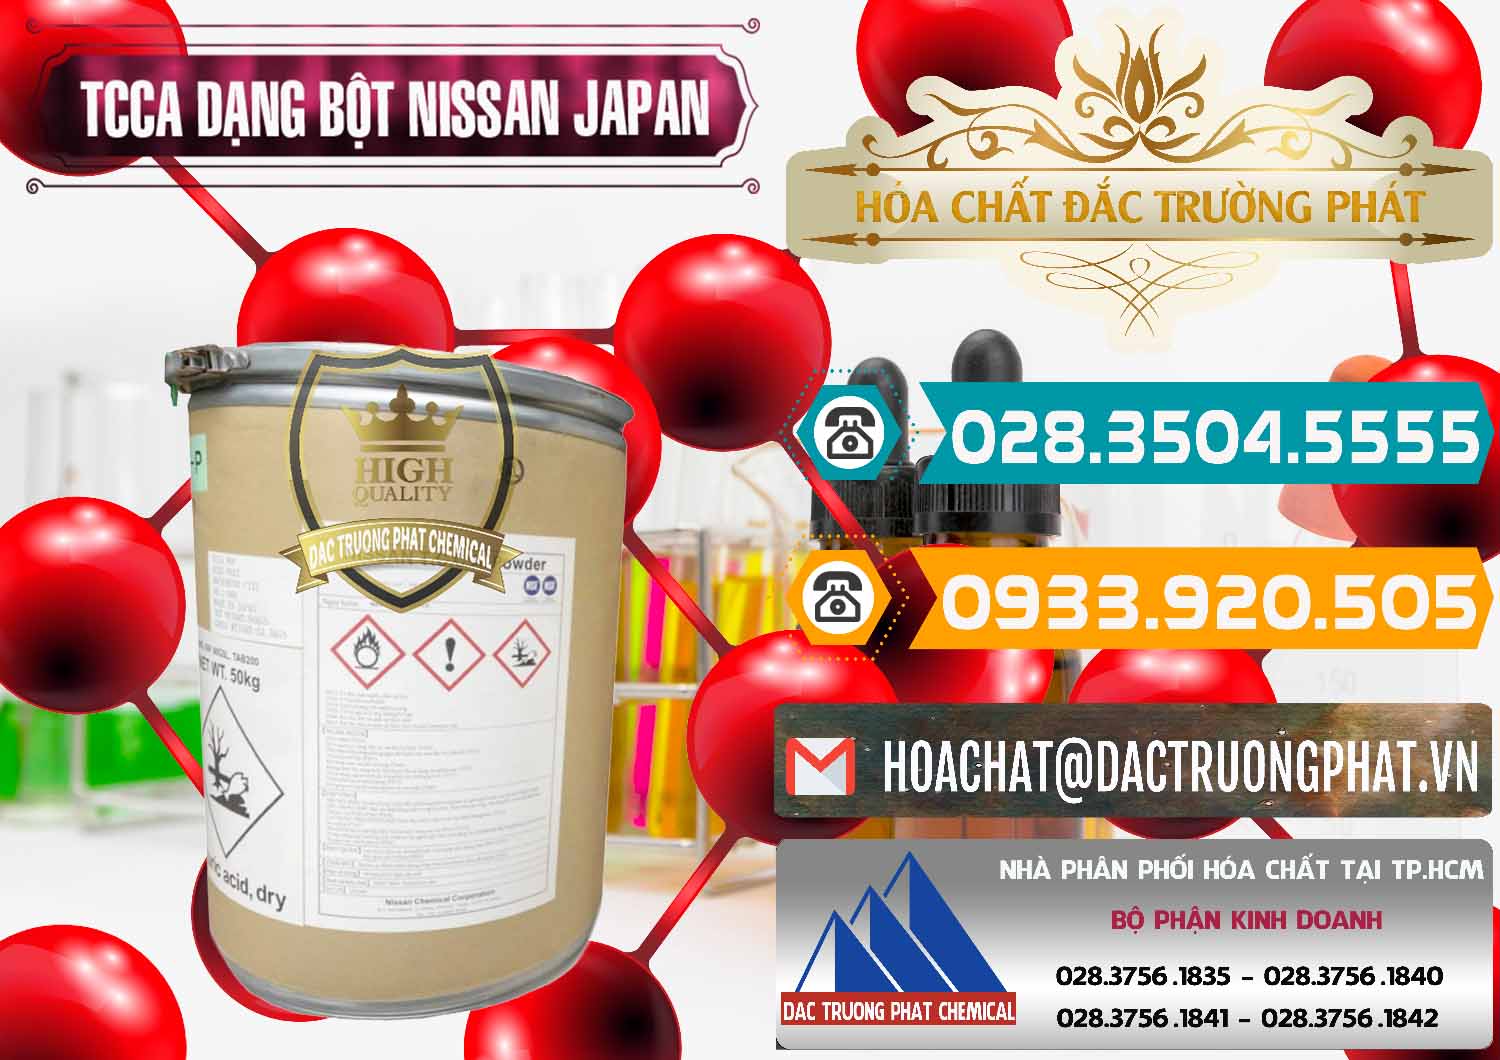 Cty chuyên cung ứng & bán TCCA - Acid Trichloroisocyanuric 90% Dạng Bột Nissan Nhật Bản Japan - 0375 - Phân phối & cung ứng hóa chất tại TP.HCM - congtyhoachat.vn